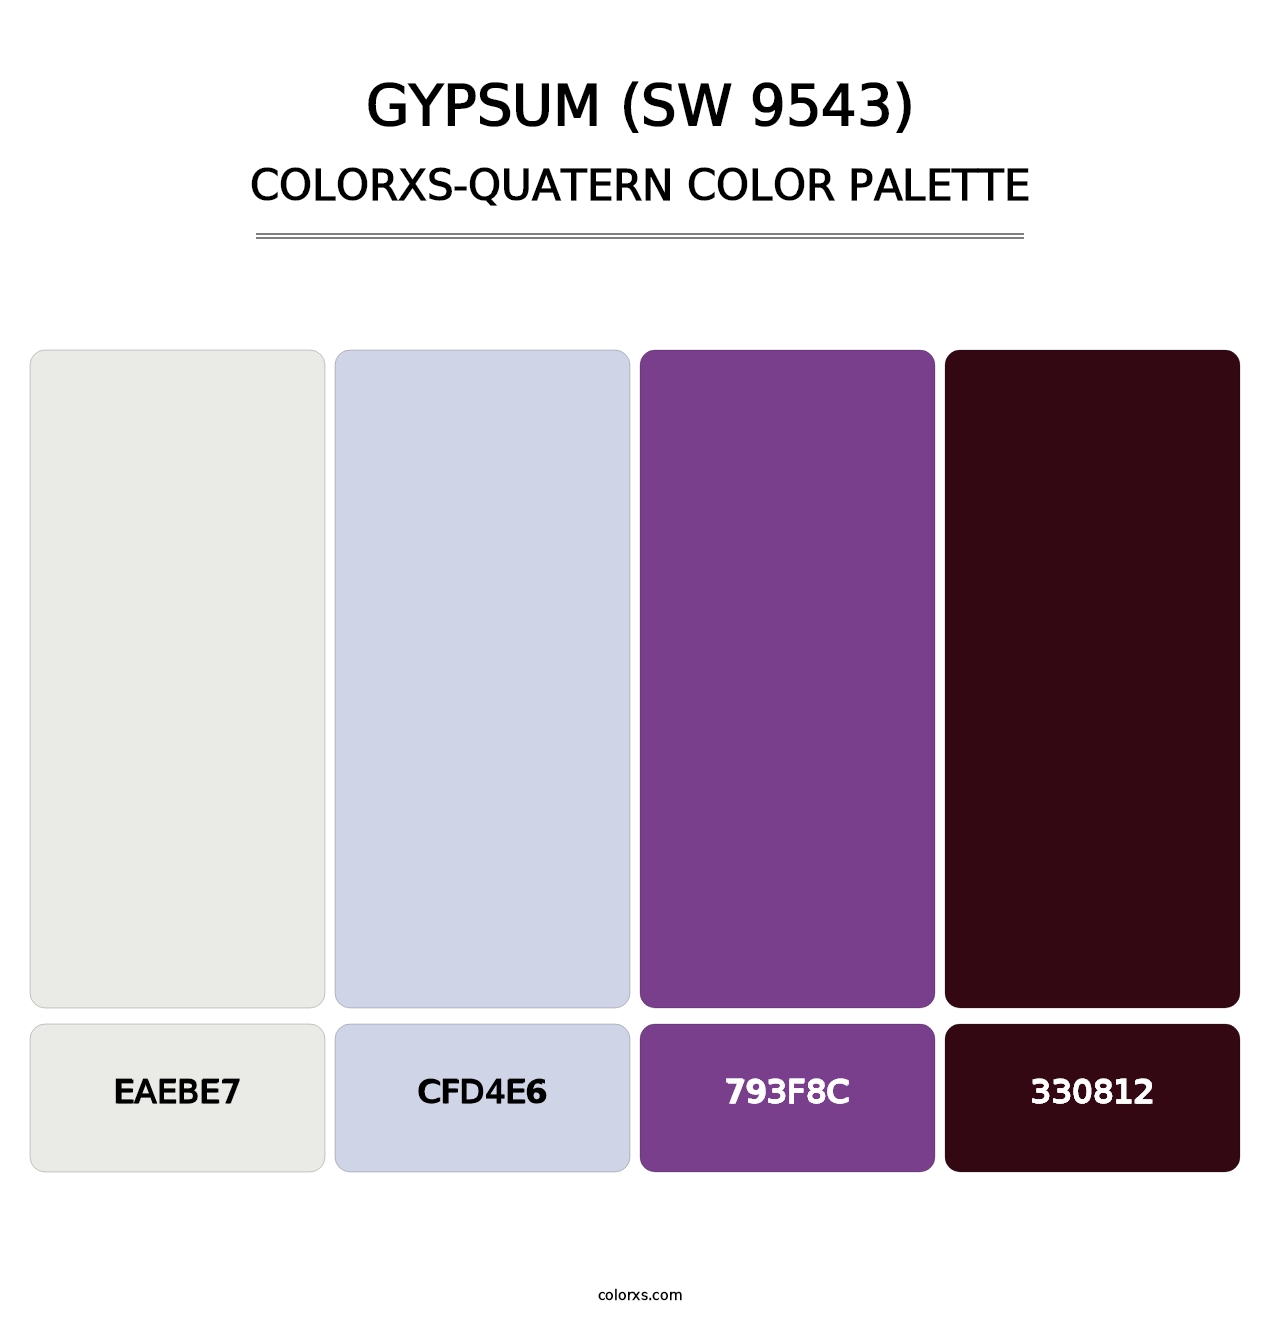 Gypsum (SW 9543) - Colorxs Quatern Palette